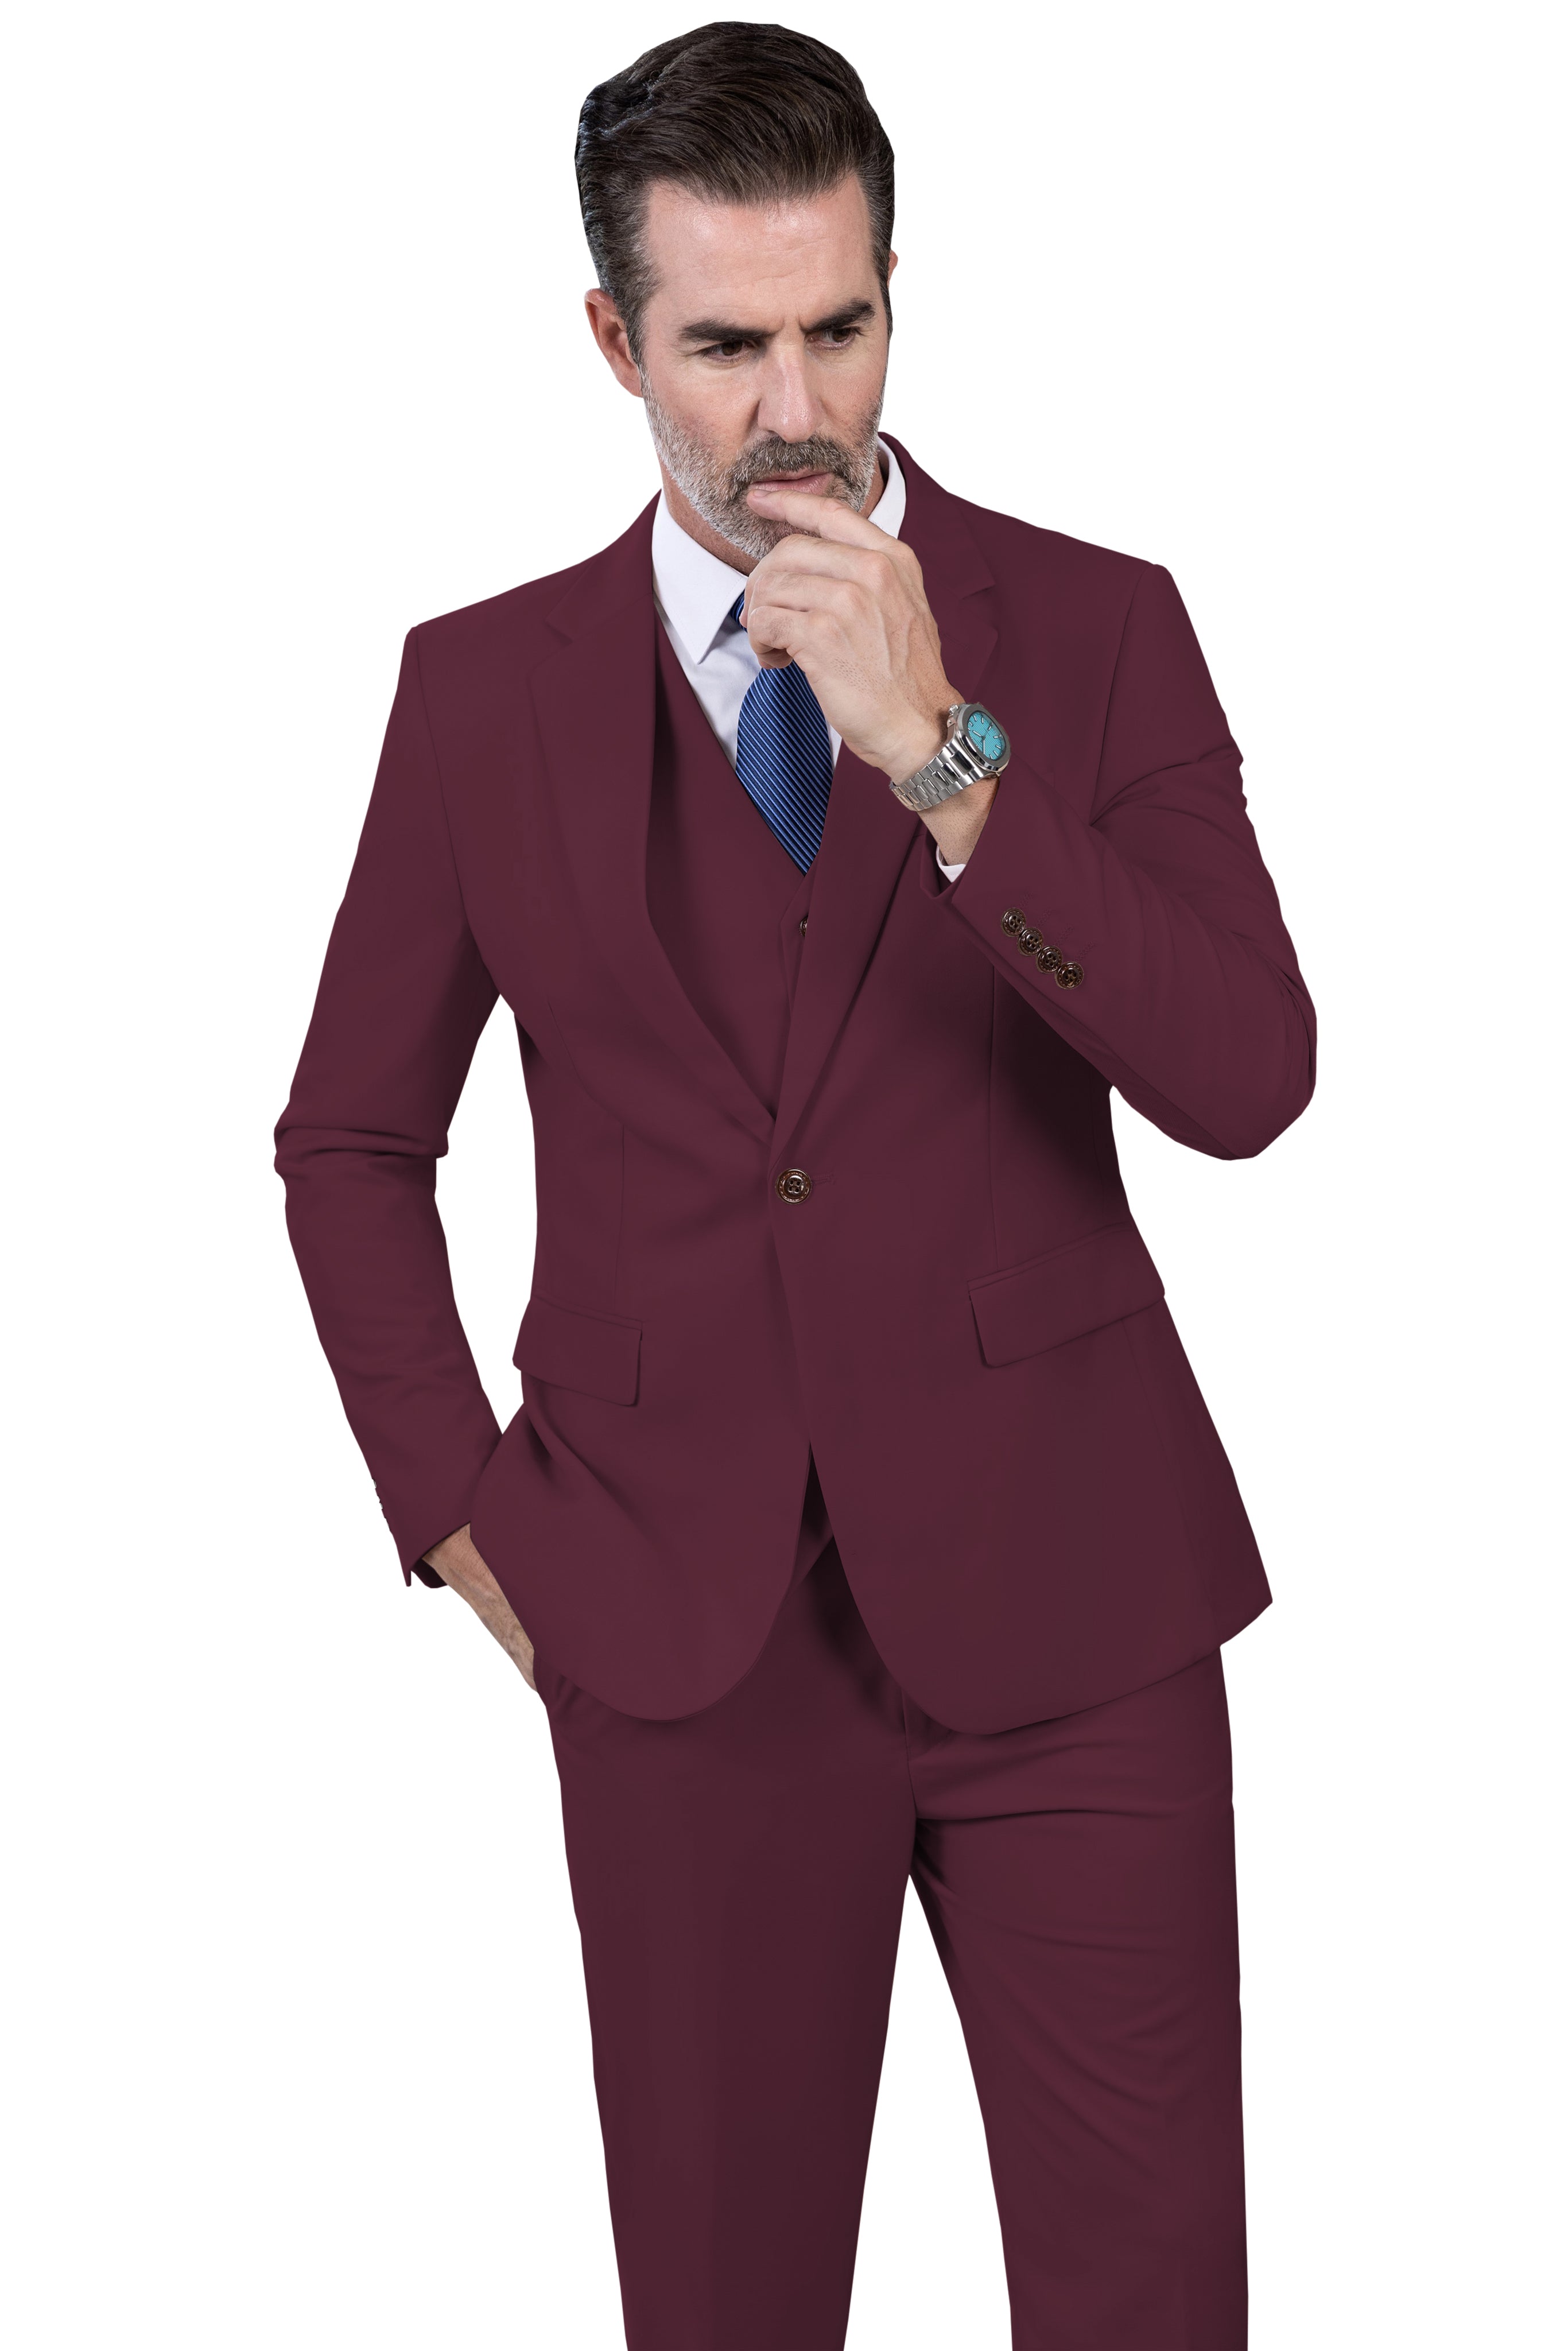 chenshijiu Men's Suit Slim Fit 3-Piece Suit Blazer Dress Business Wedding  Party Jacket Vest & Pants Wine Red S : Amazon.in: Fashion